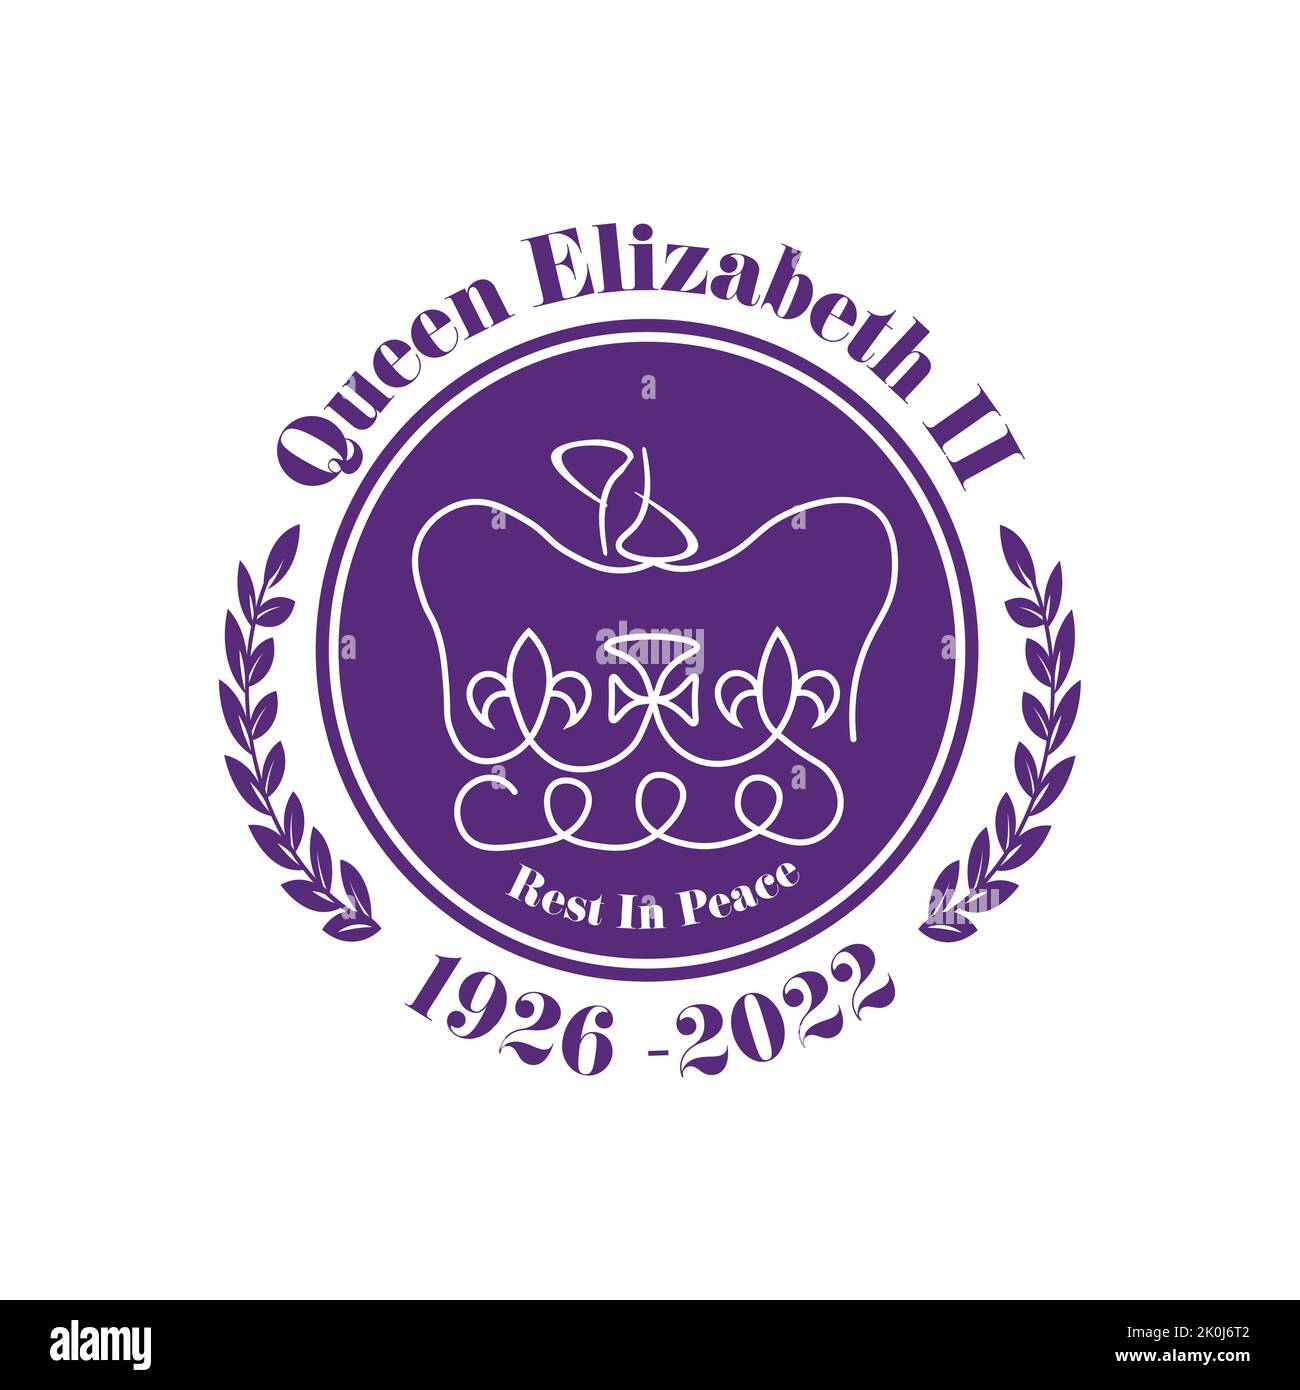 2022 Queen Elizabeth Dies - 1926 - 2022 Rest in Peace vector illustration. Stock Vector